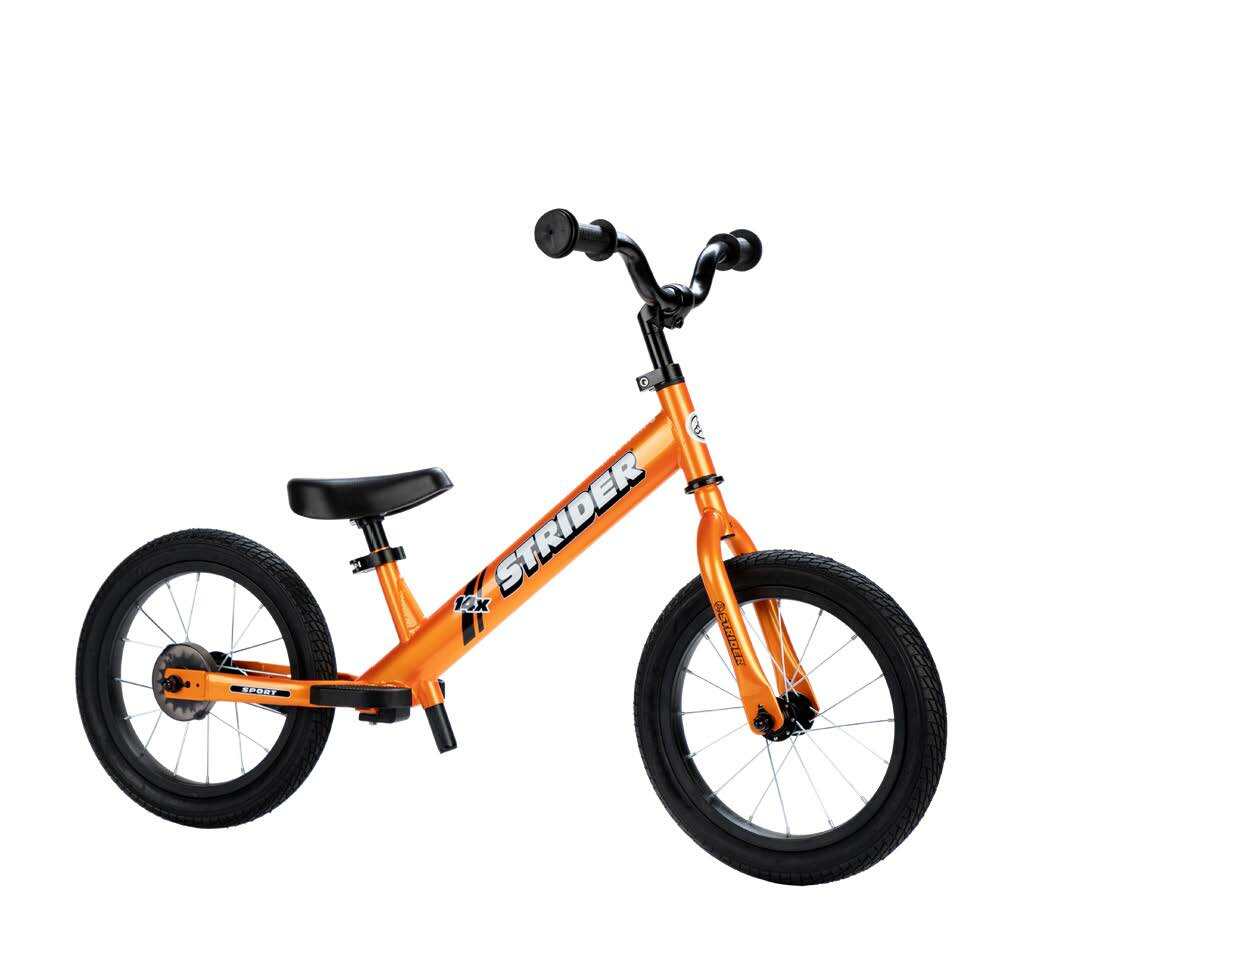 14x Sport Bike Tangerine